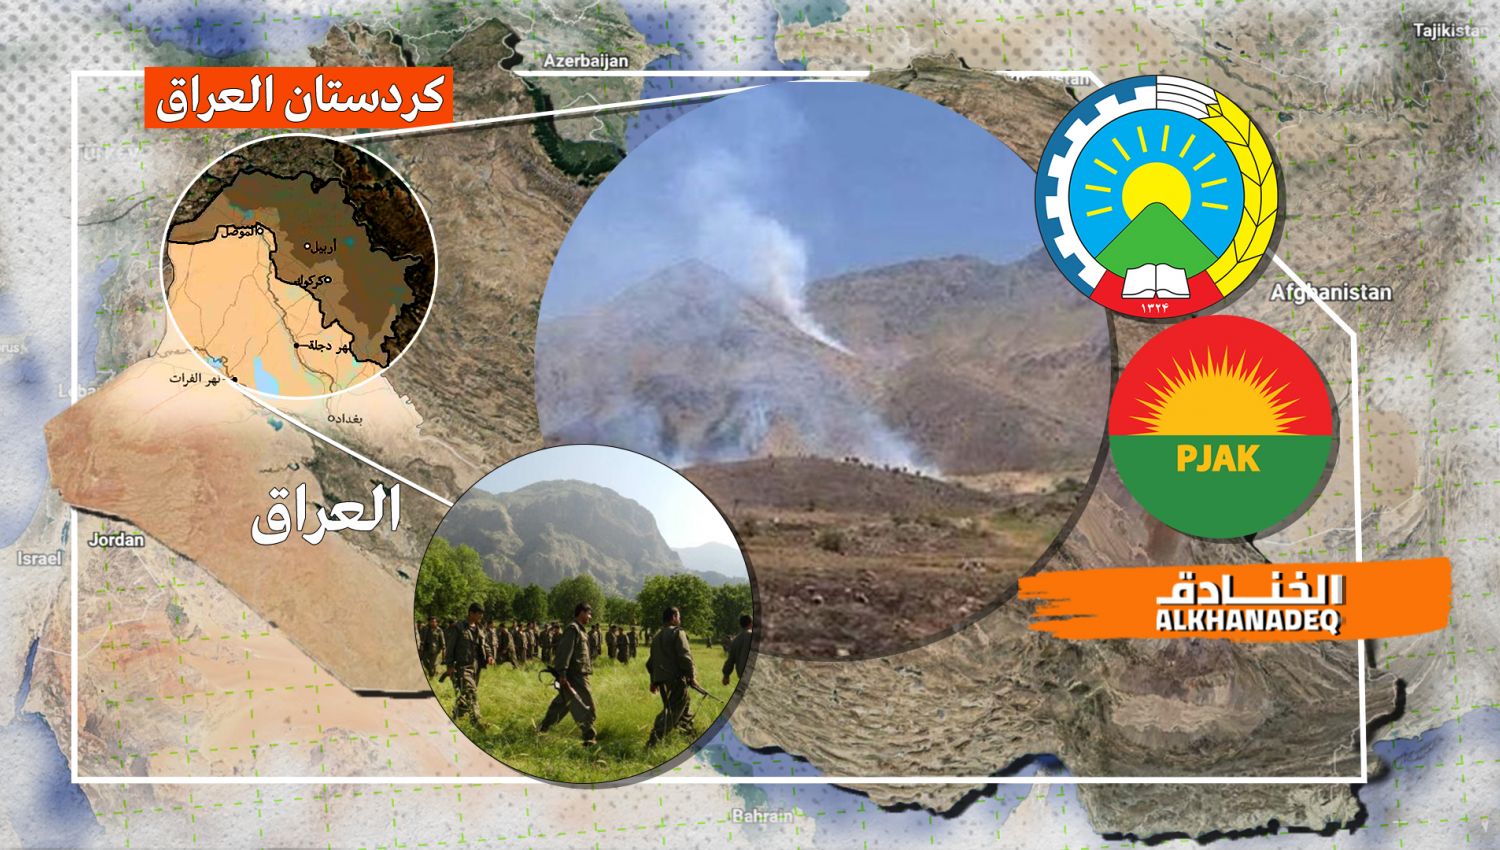 إيران تضرب بقوة المجموعات الإرهابية في كردستان